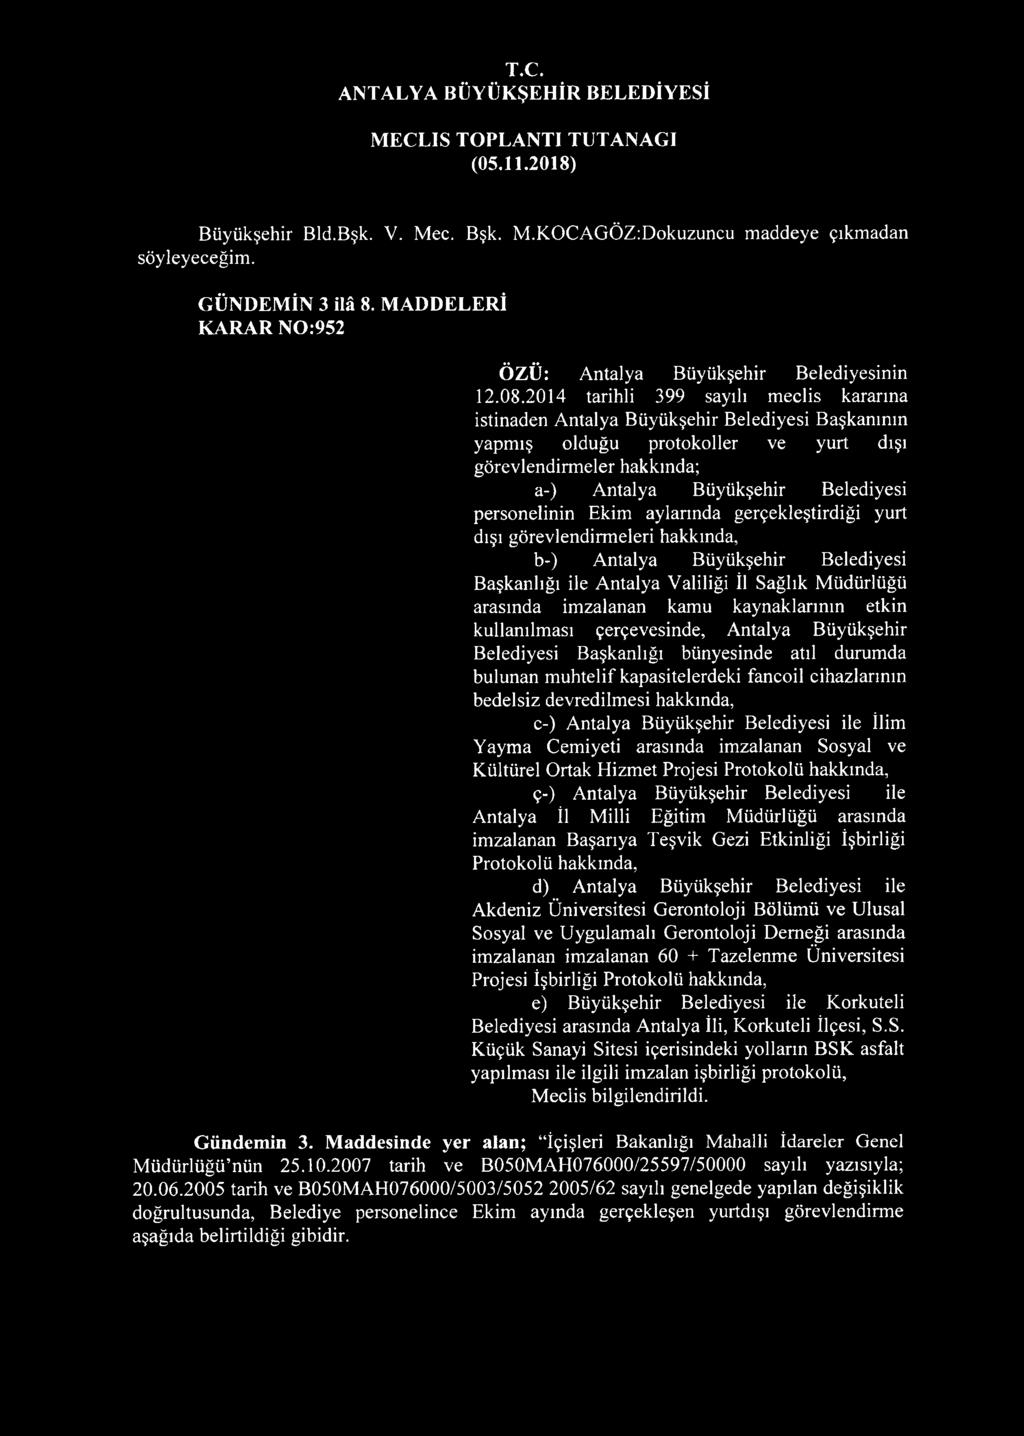 personelinin Ekim aylarında gerçekleştirdiği yurt dışı görevlendirmeleri hakkında, b-) Antalya Büyükşehir Belediyesi Başkanlığı ile Antalya Valiliği İl Sağlık Müdürlüğü arasında imzalanan kamu